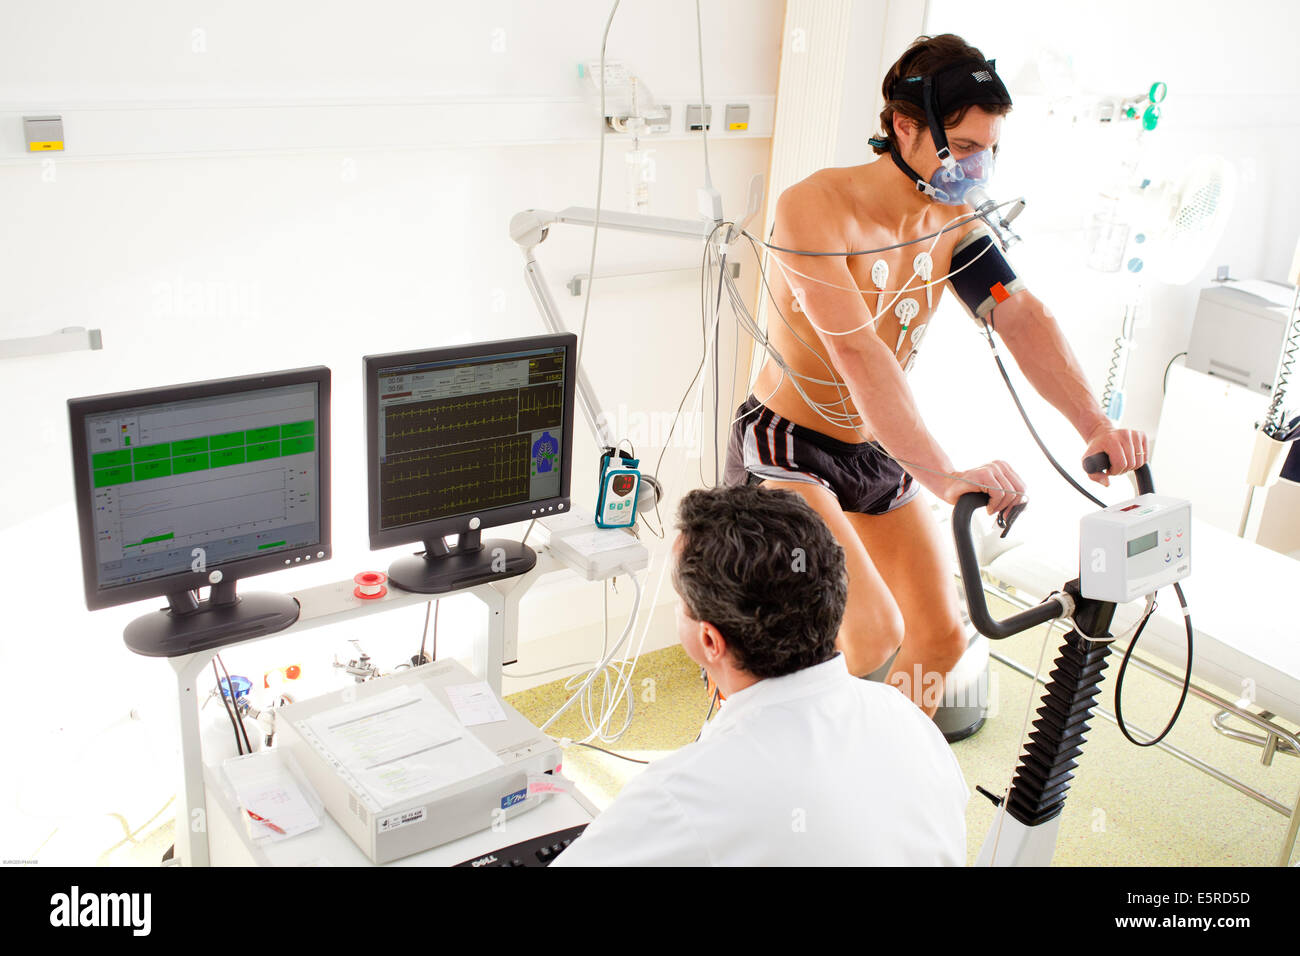 L'homme l'objet d'un test d'effort et un test de fonction pulmonaire, les maladies respiratoires, ministère de l'hôpital de Limoges, France. Banque D'Images